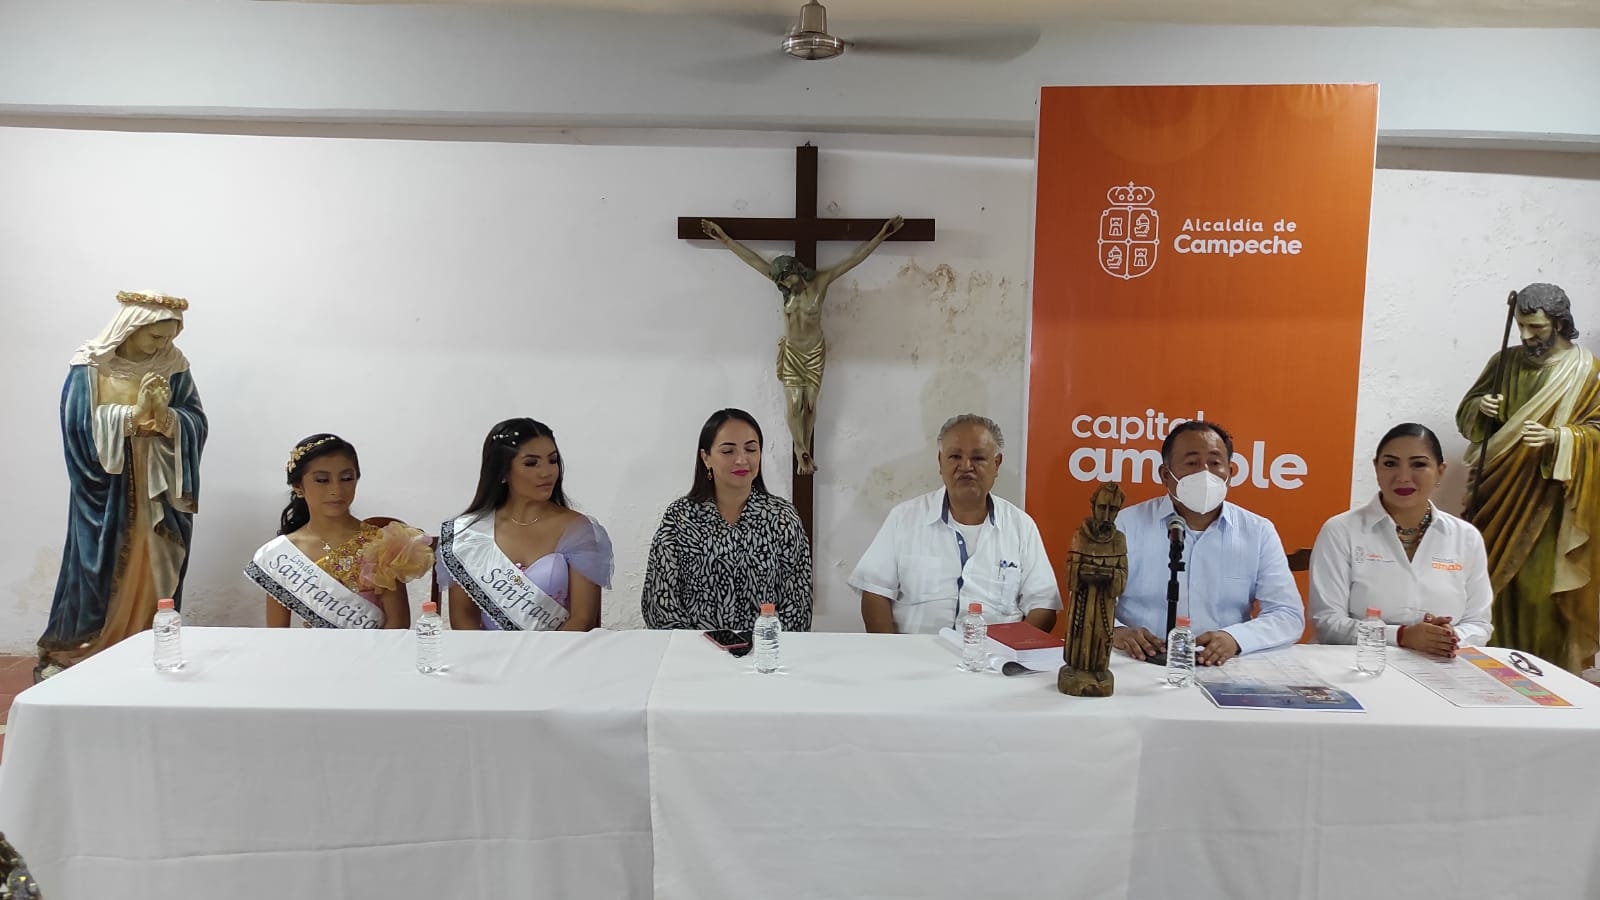 Las fiestas en honor a San Francisco de Asís en Campeche comenzarán este 25 de septiembre